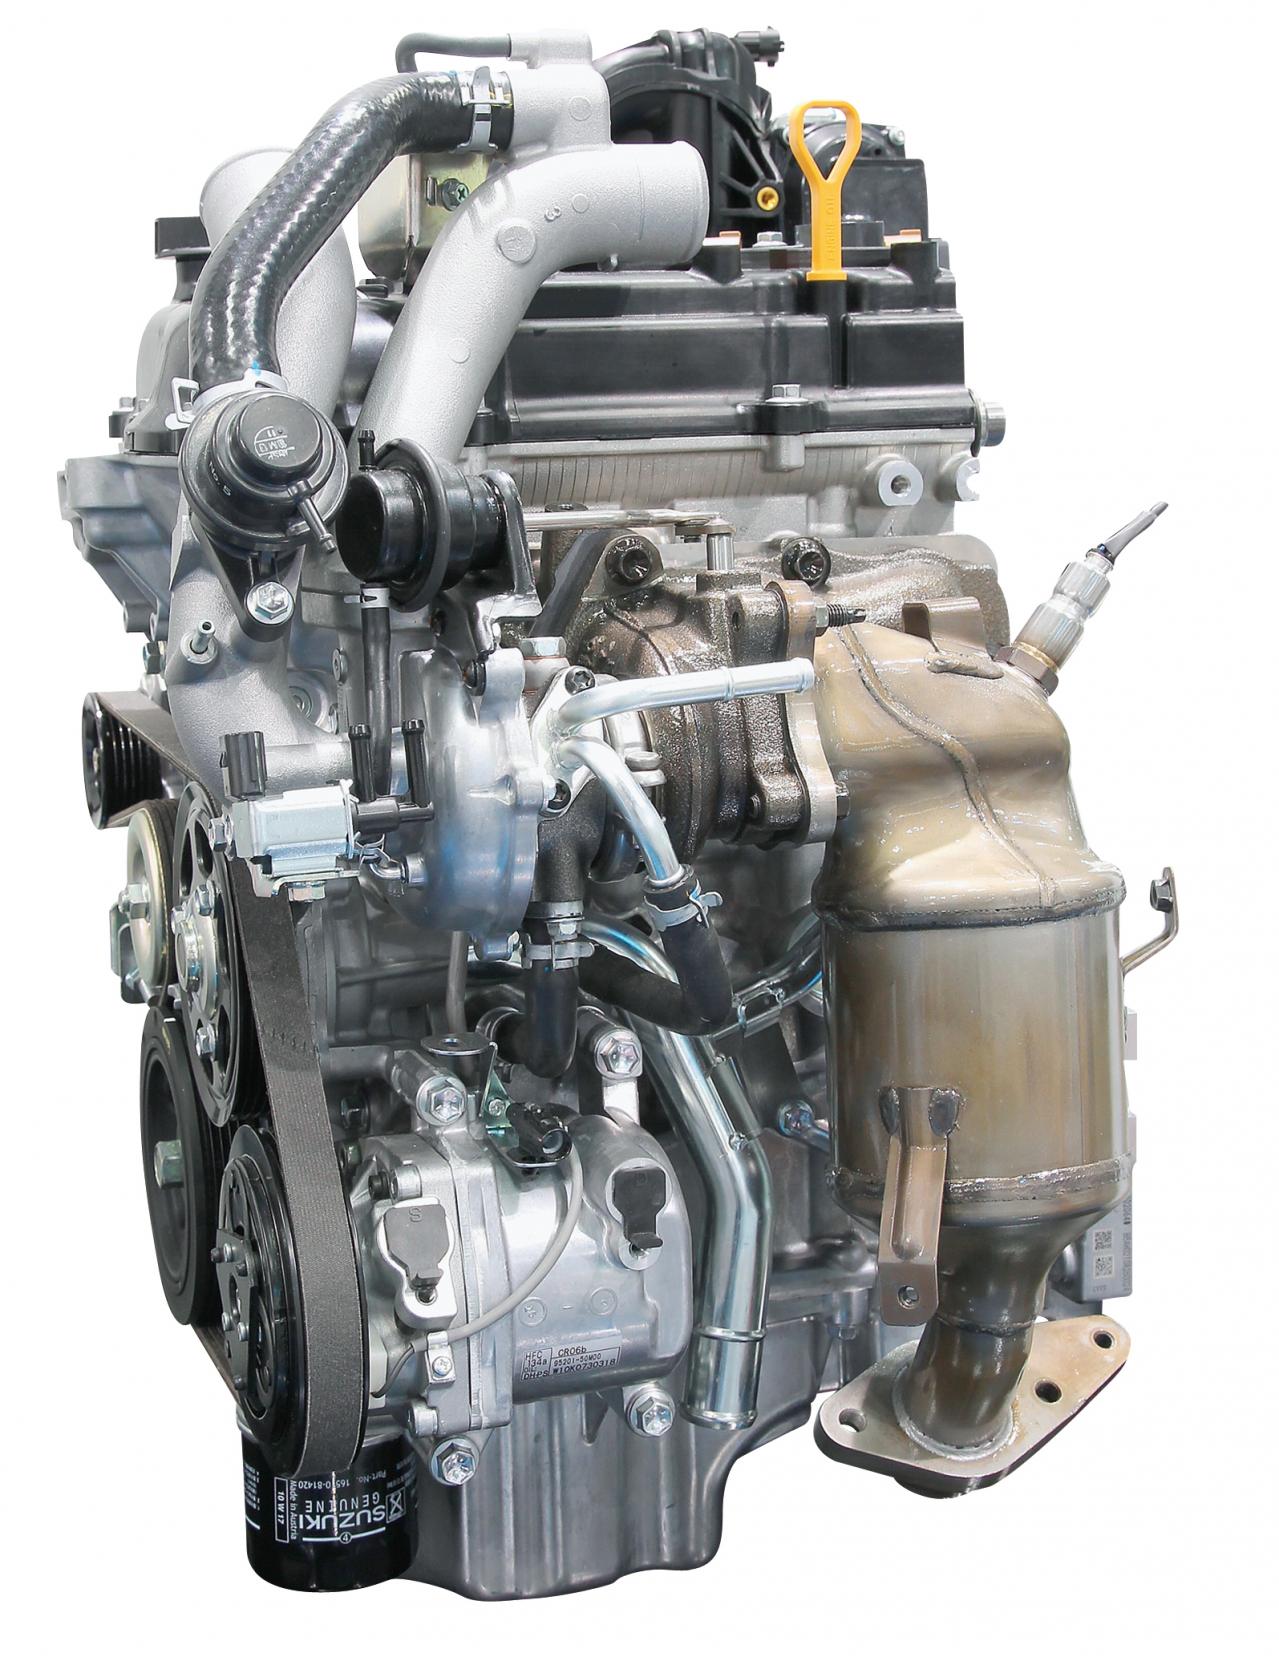 ファッションなデザイン リビルト エンジン エブリィ DE51V F6A 国内生産 コア返却必要 事前適合確認必要